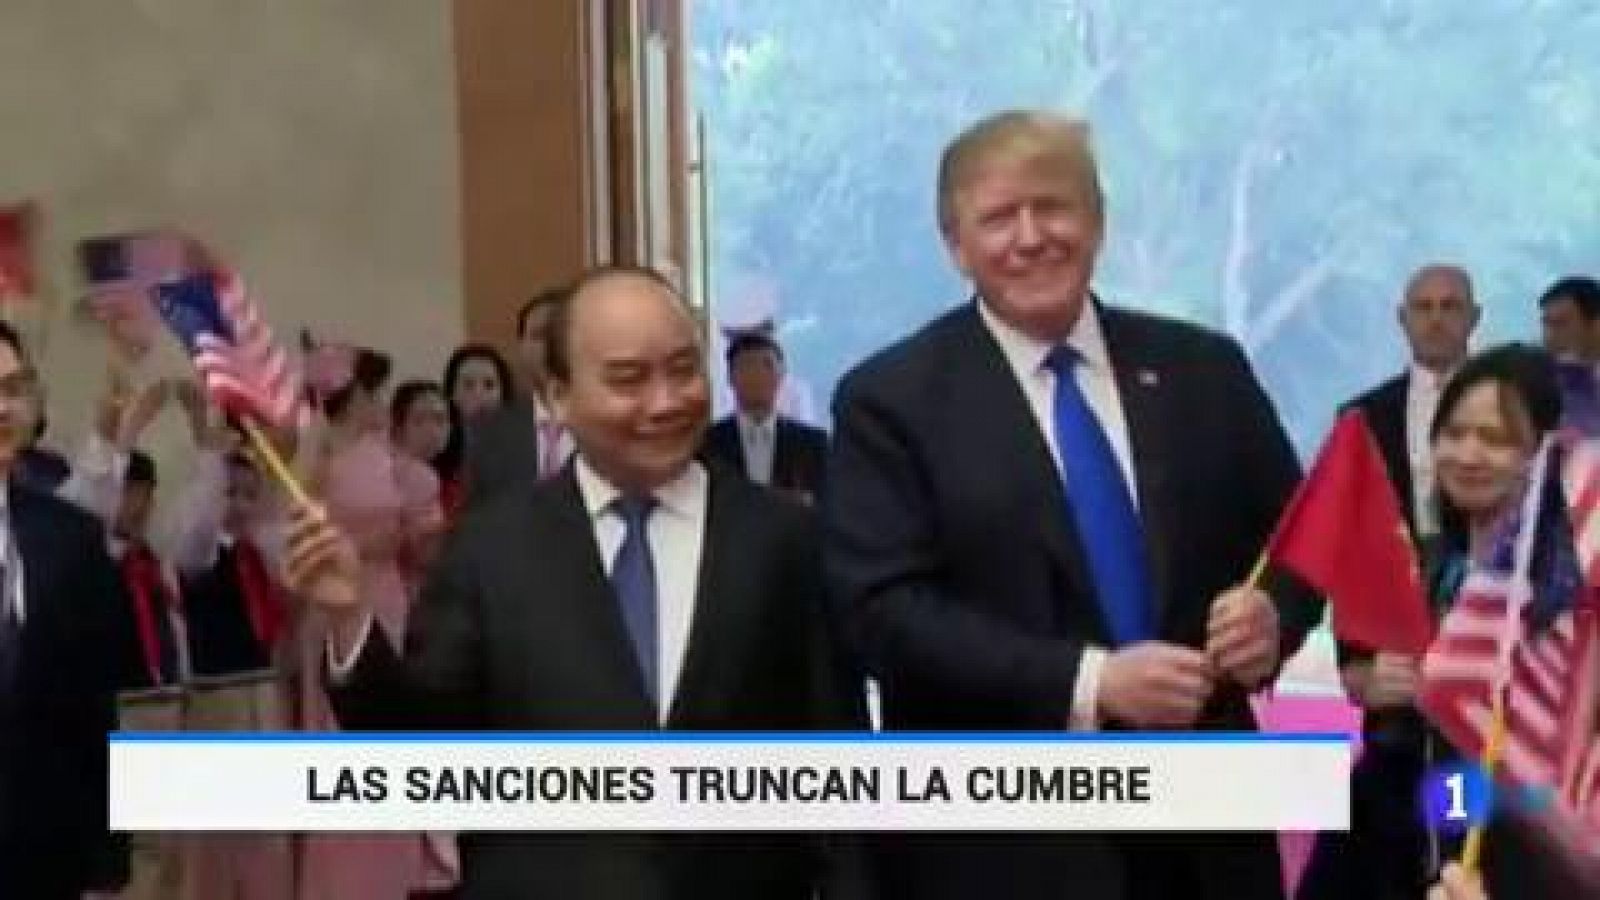 Cumbre Trump Kim: La cumbre de Trump y Kim Jong-un en Vietnam termina sin acuerdo - RTVE.es